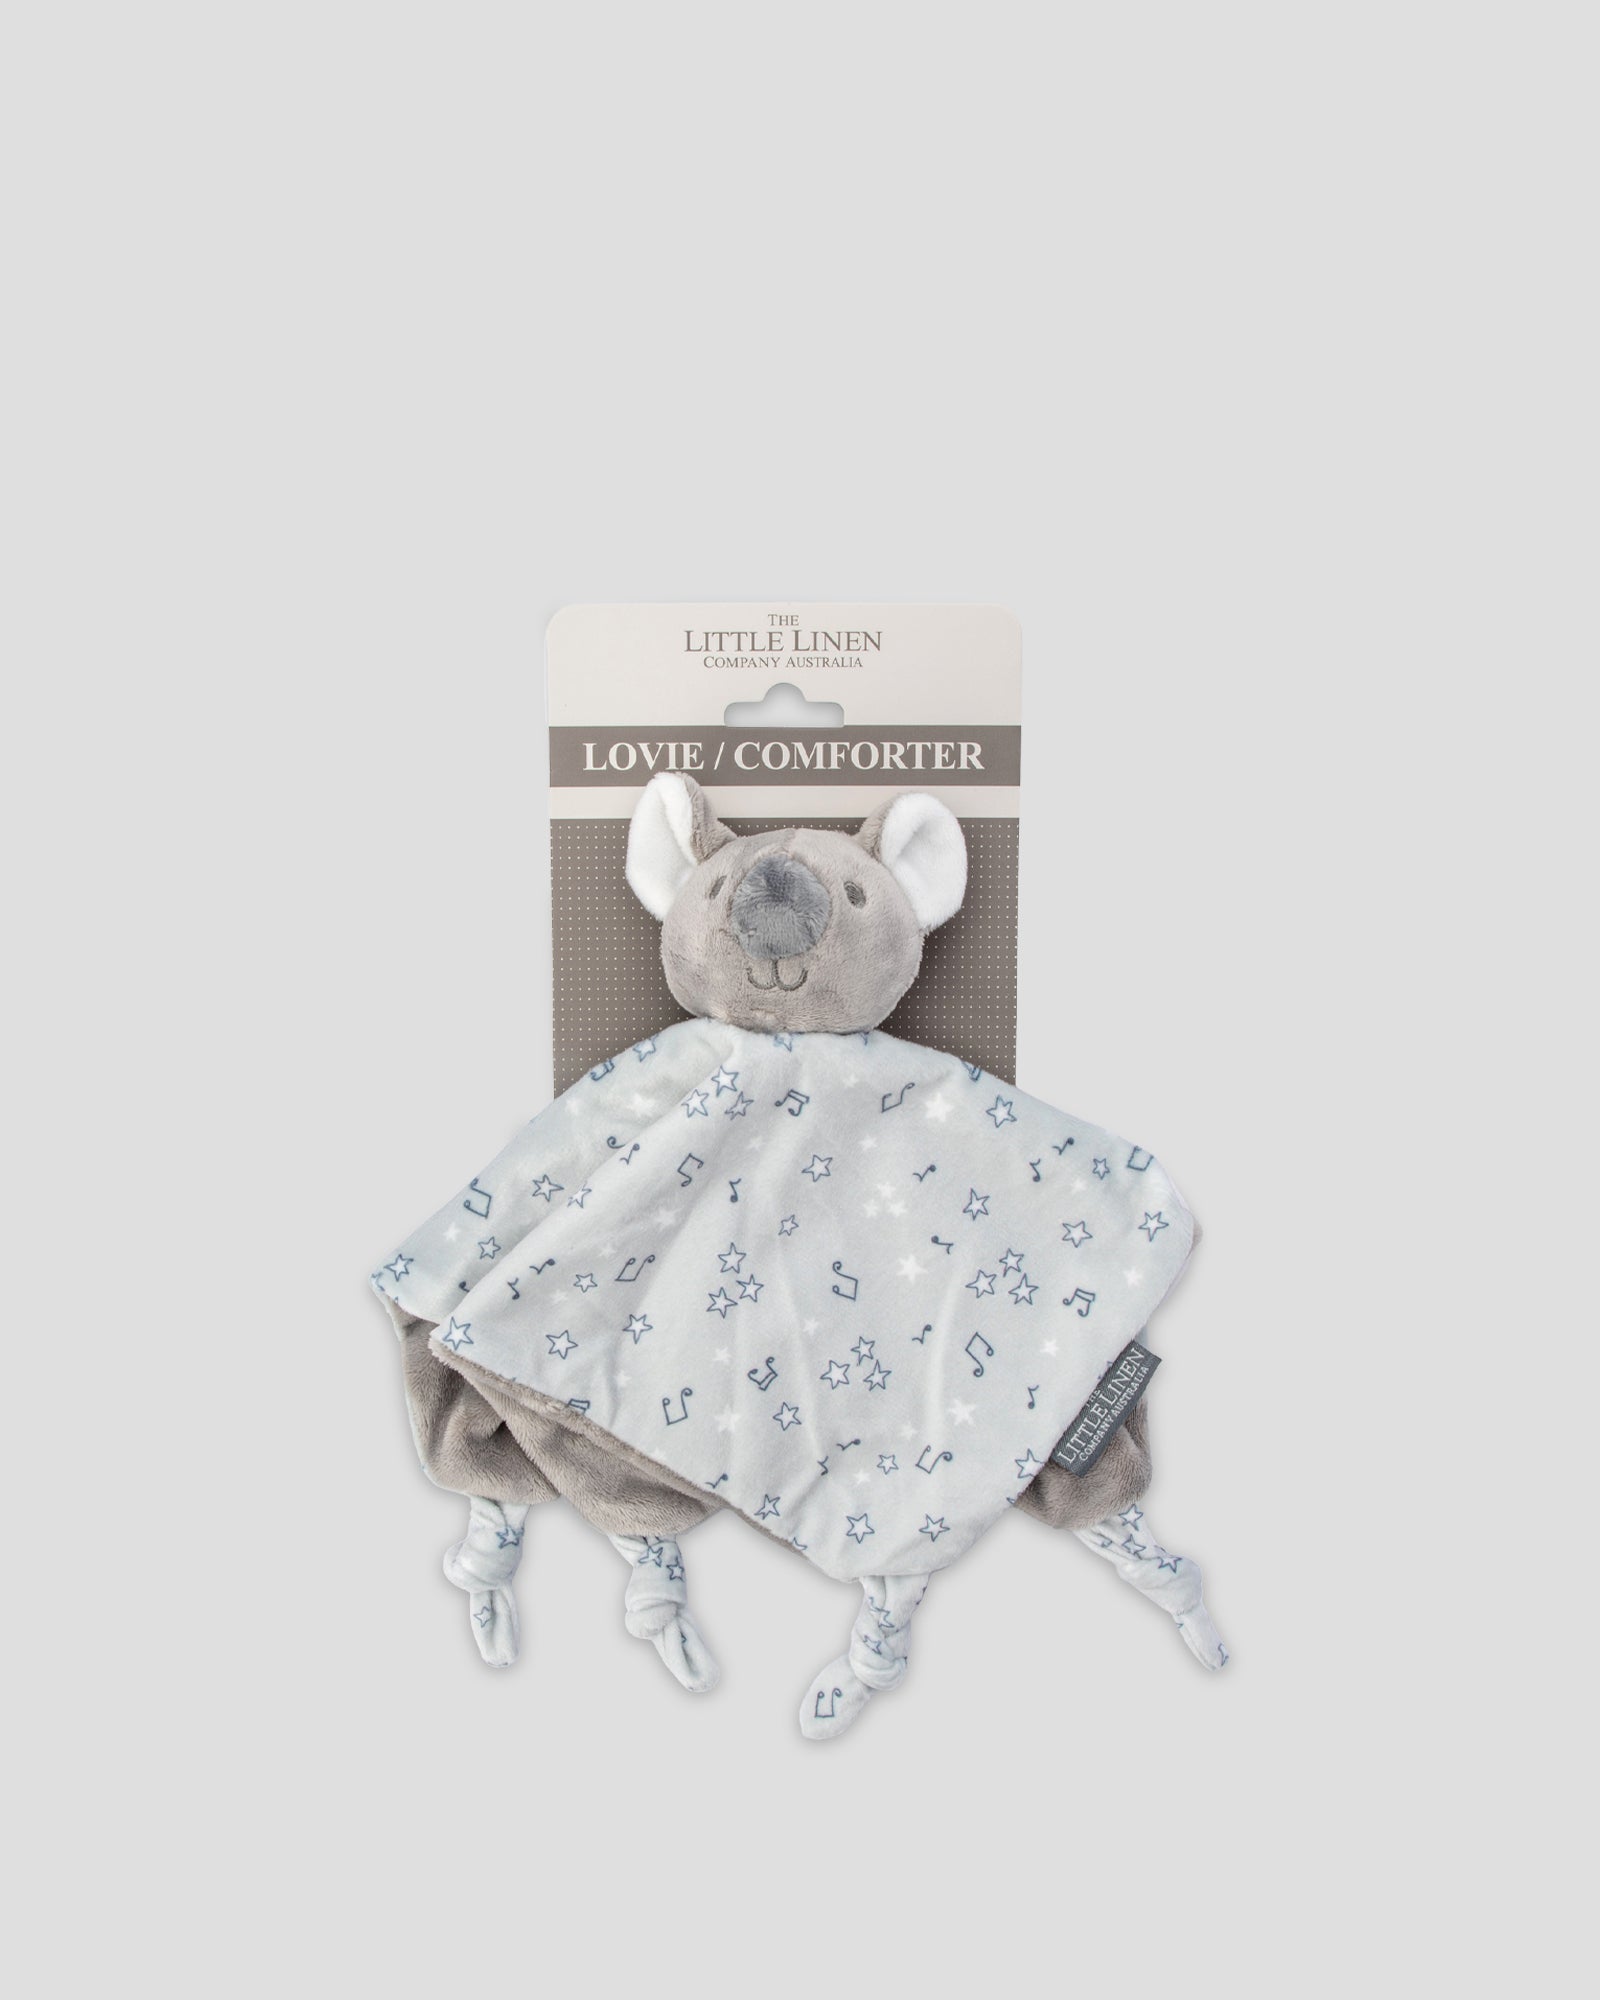 Little Linen Baby Comforter Toy / Security Blanket